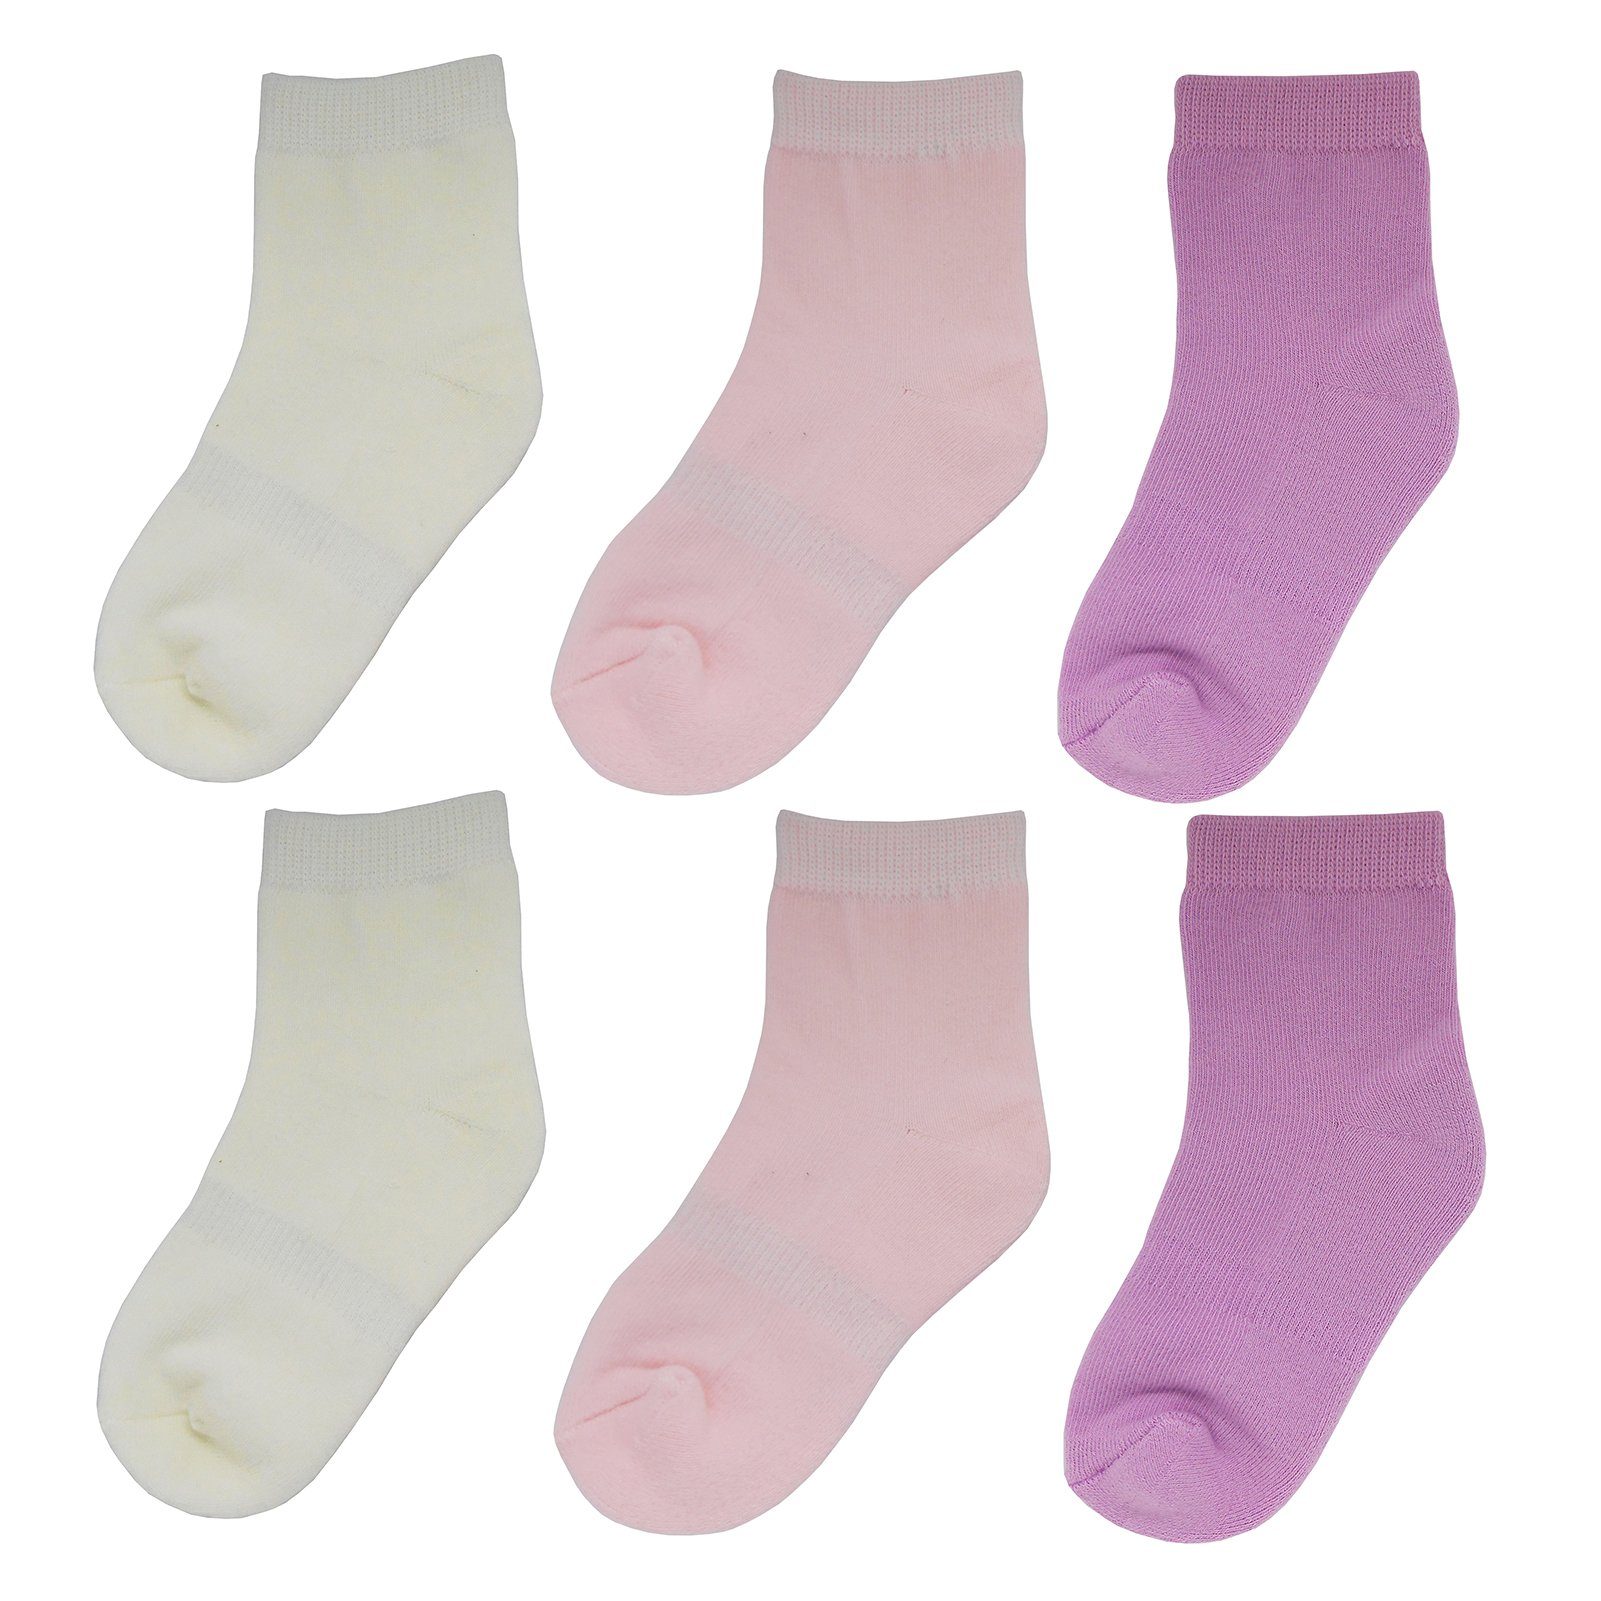 Yalion Langsocken Weiche Kinder Socken Babysocken (6-Paar) mit Halbplüsch 3 Farben mit Halbplüsch Creme farben-Rosa-Fuchsia